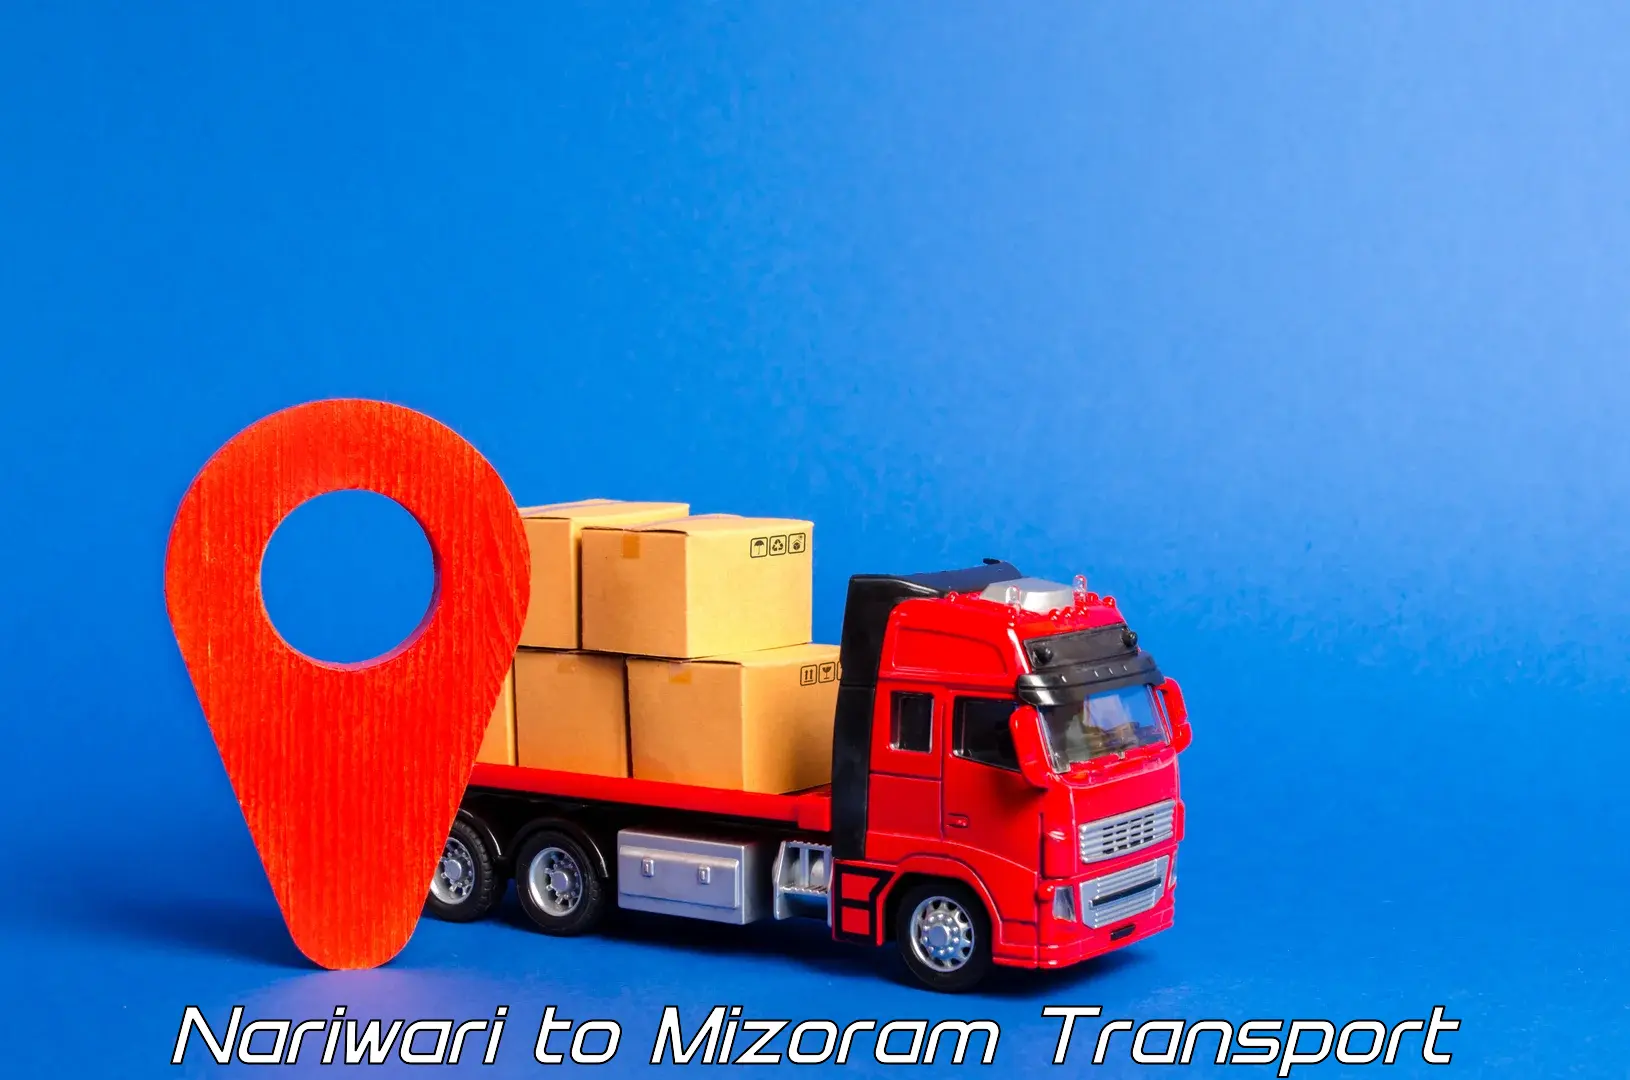 Vehicle transport services Nariwari to Saiha